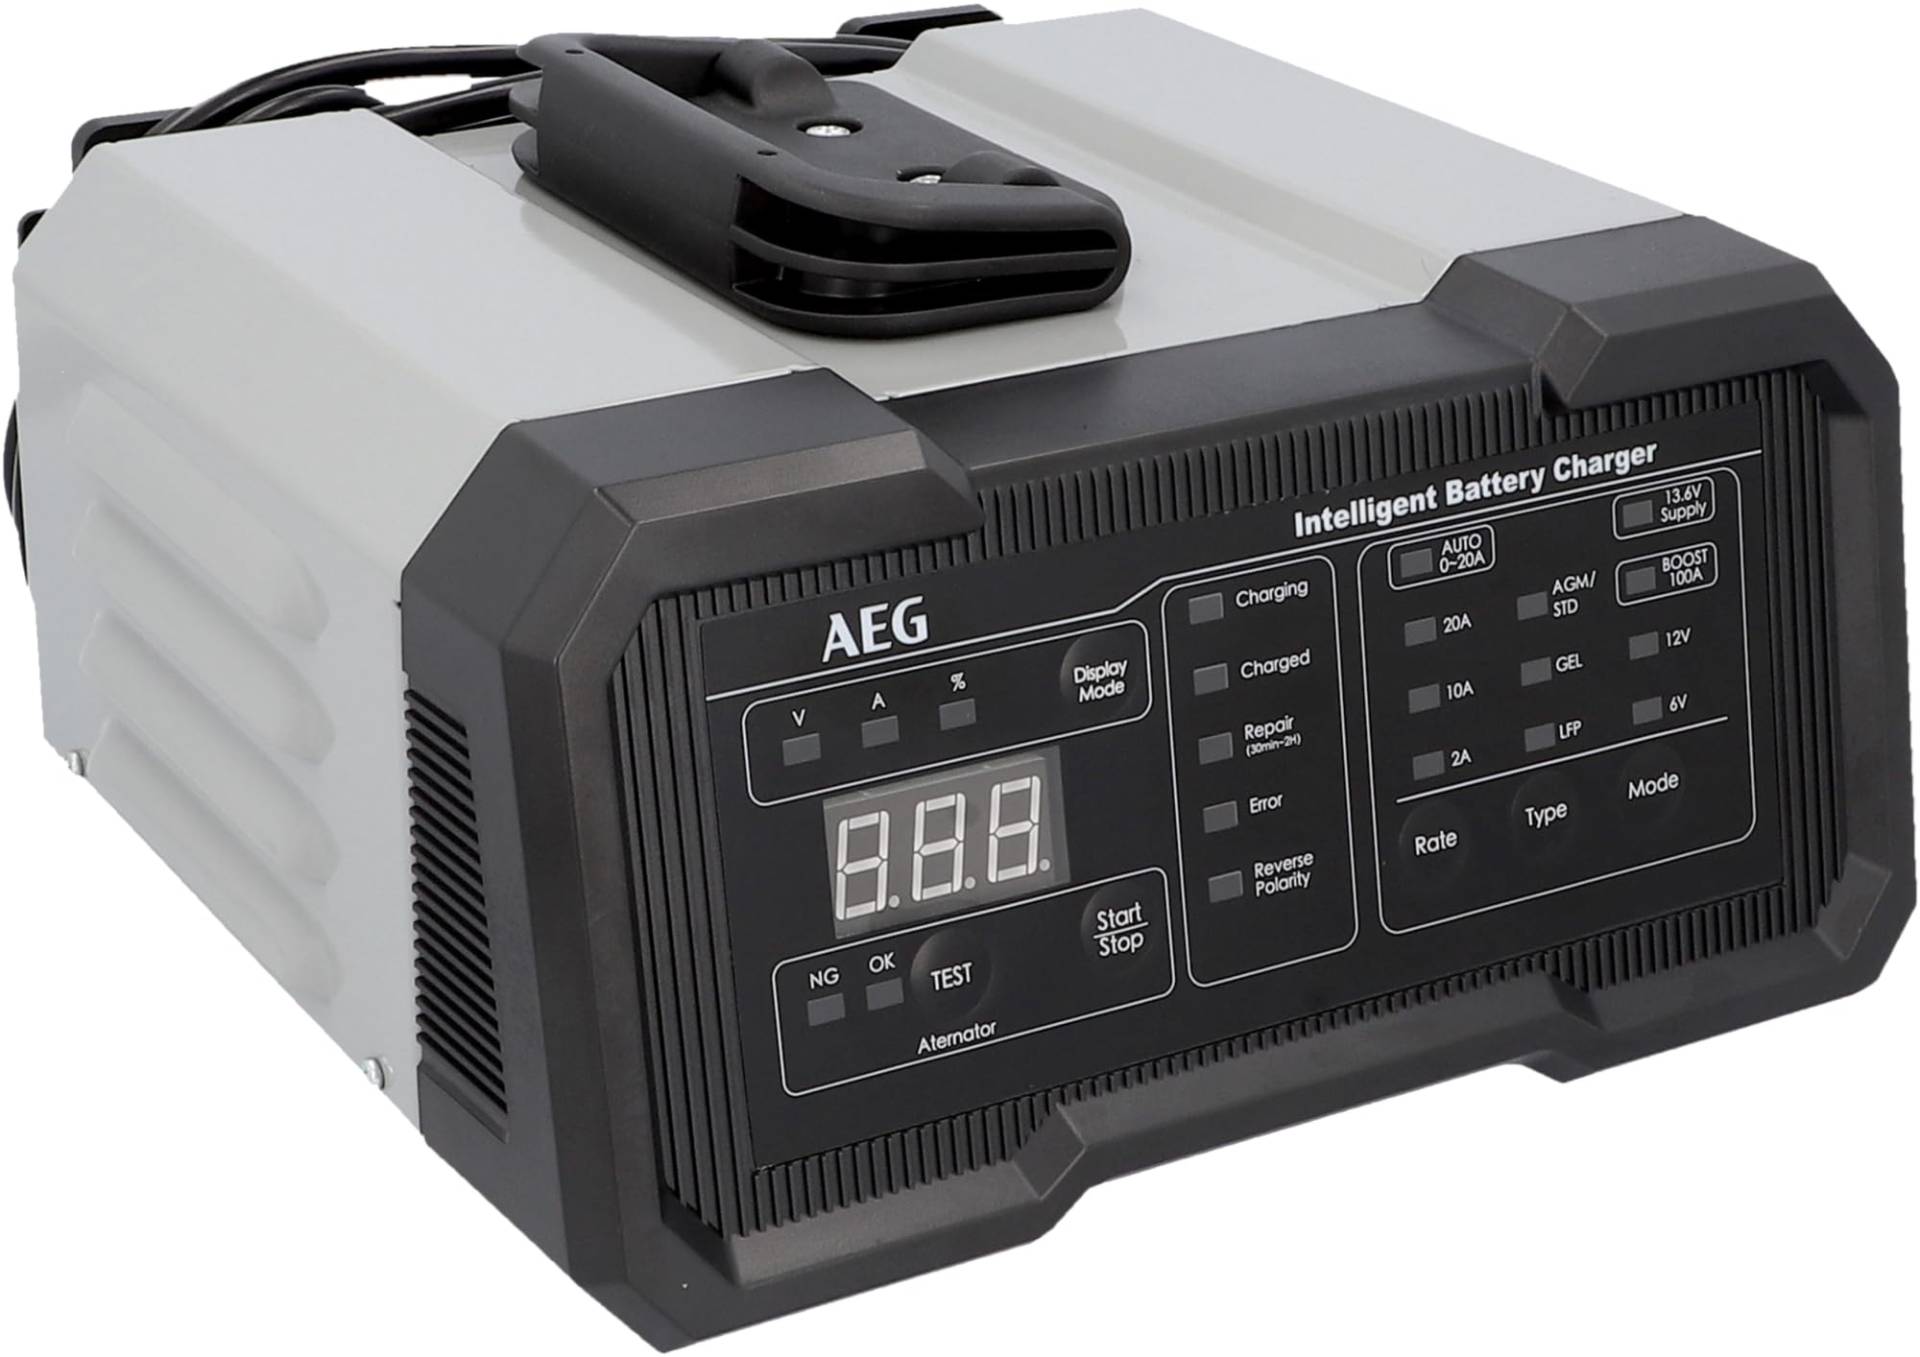 AEG Batterieladegerät CW20 lädt alle 6 V und 12 V Batterien, umfangreicher Sicherungsschutz, mit Ladestatusanzeige in % von AEG